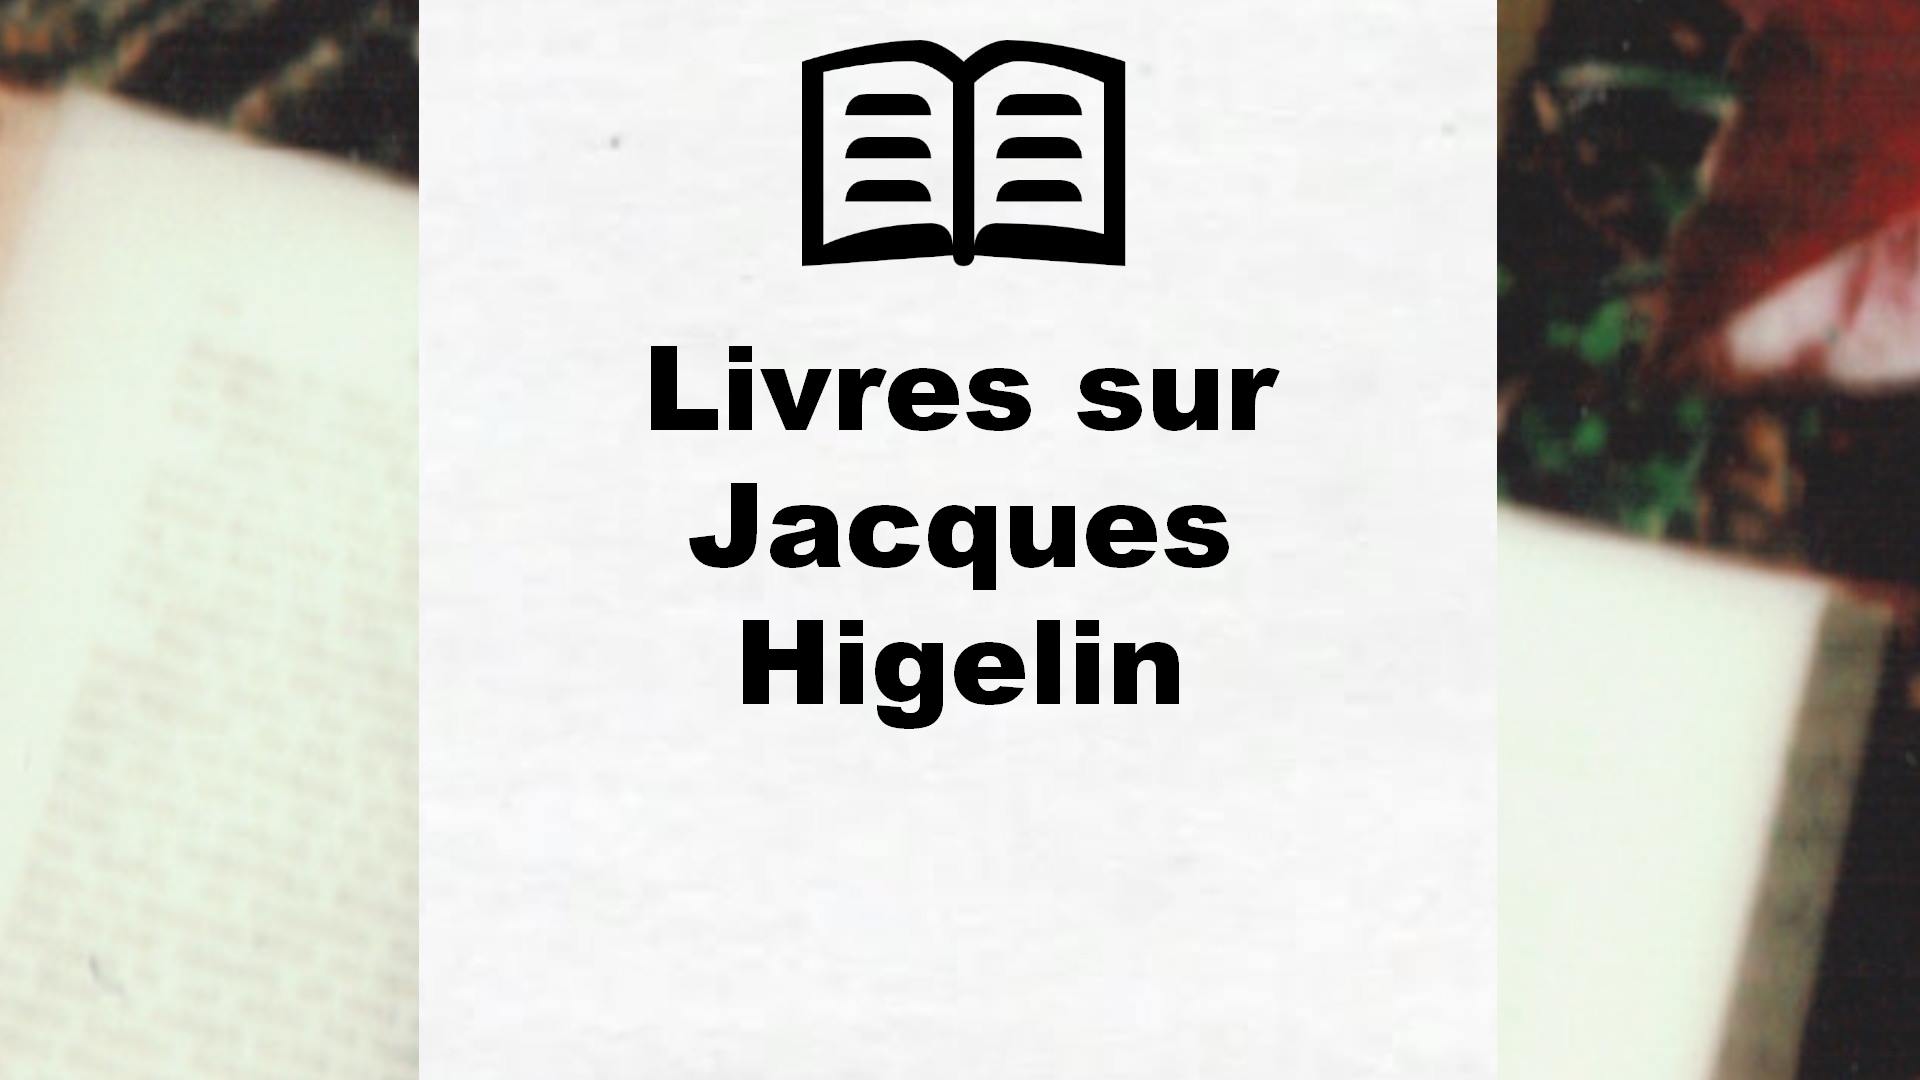 Livres sur Jacques Higelin